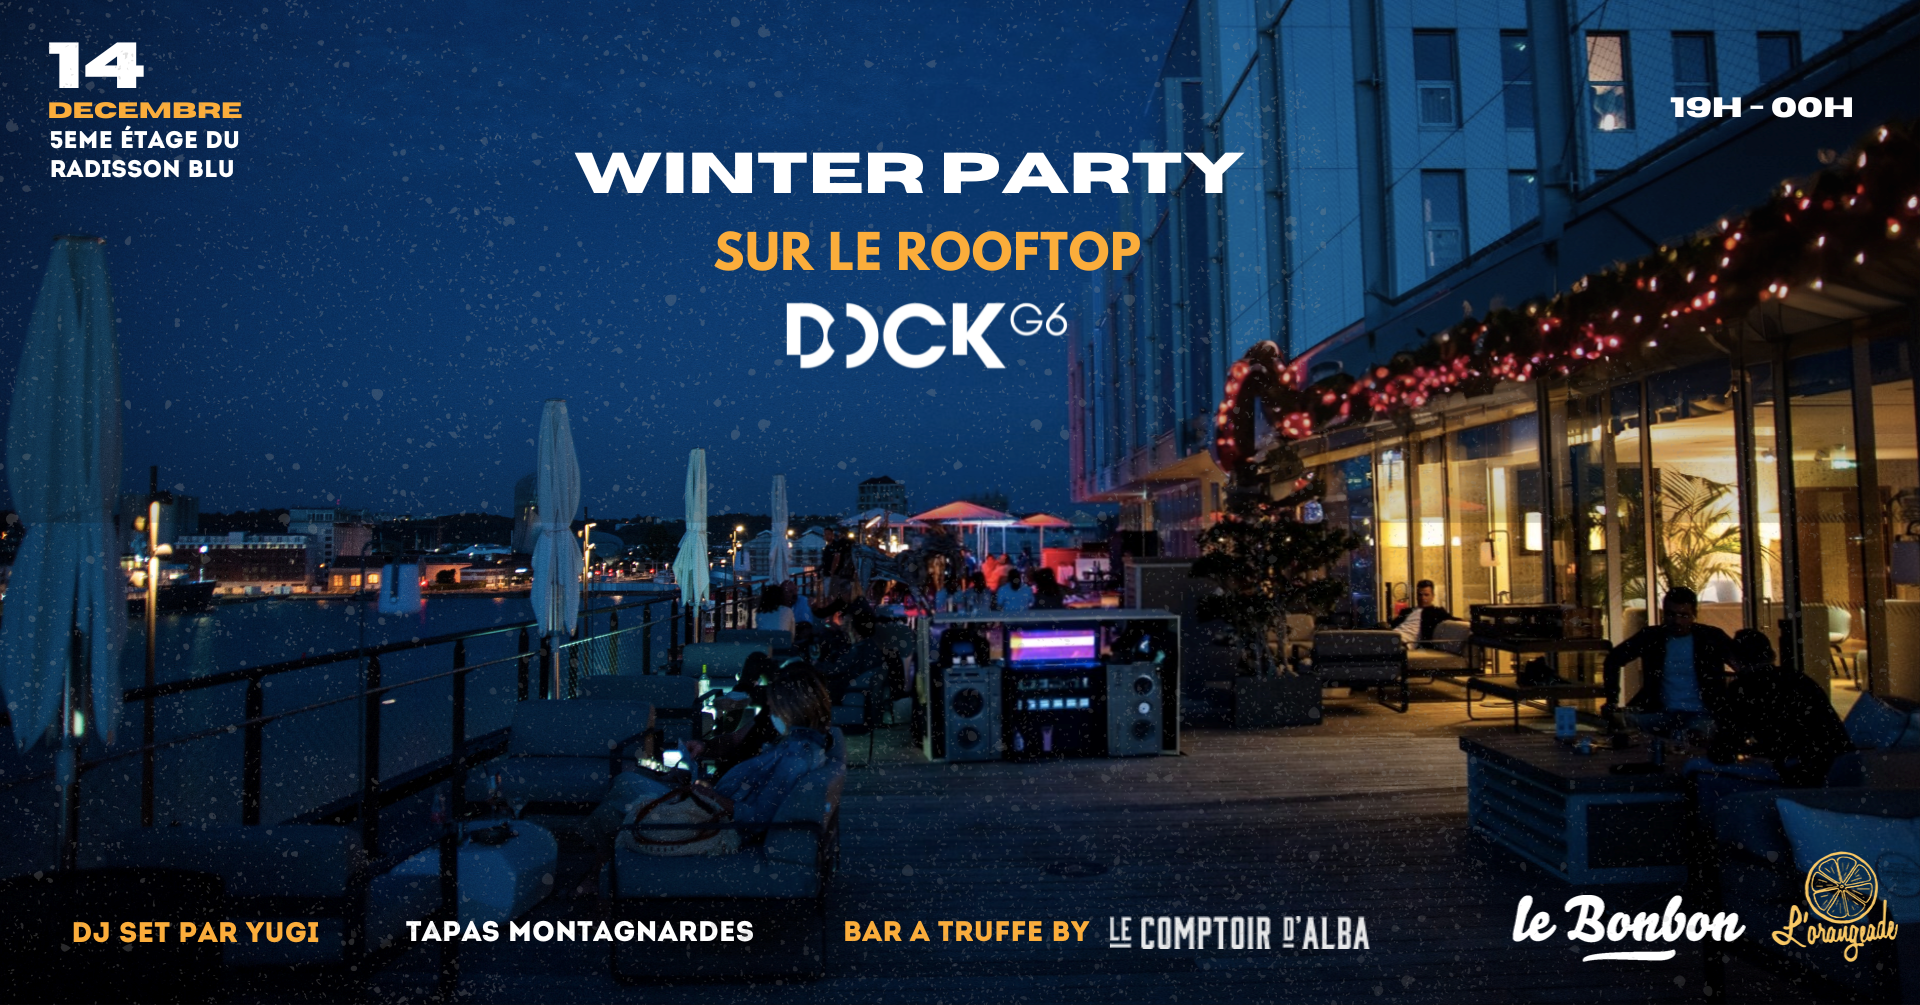 winter party dock g6 bordeaux